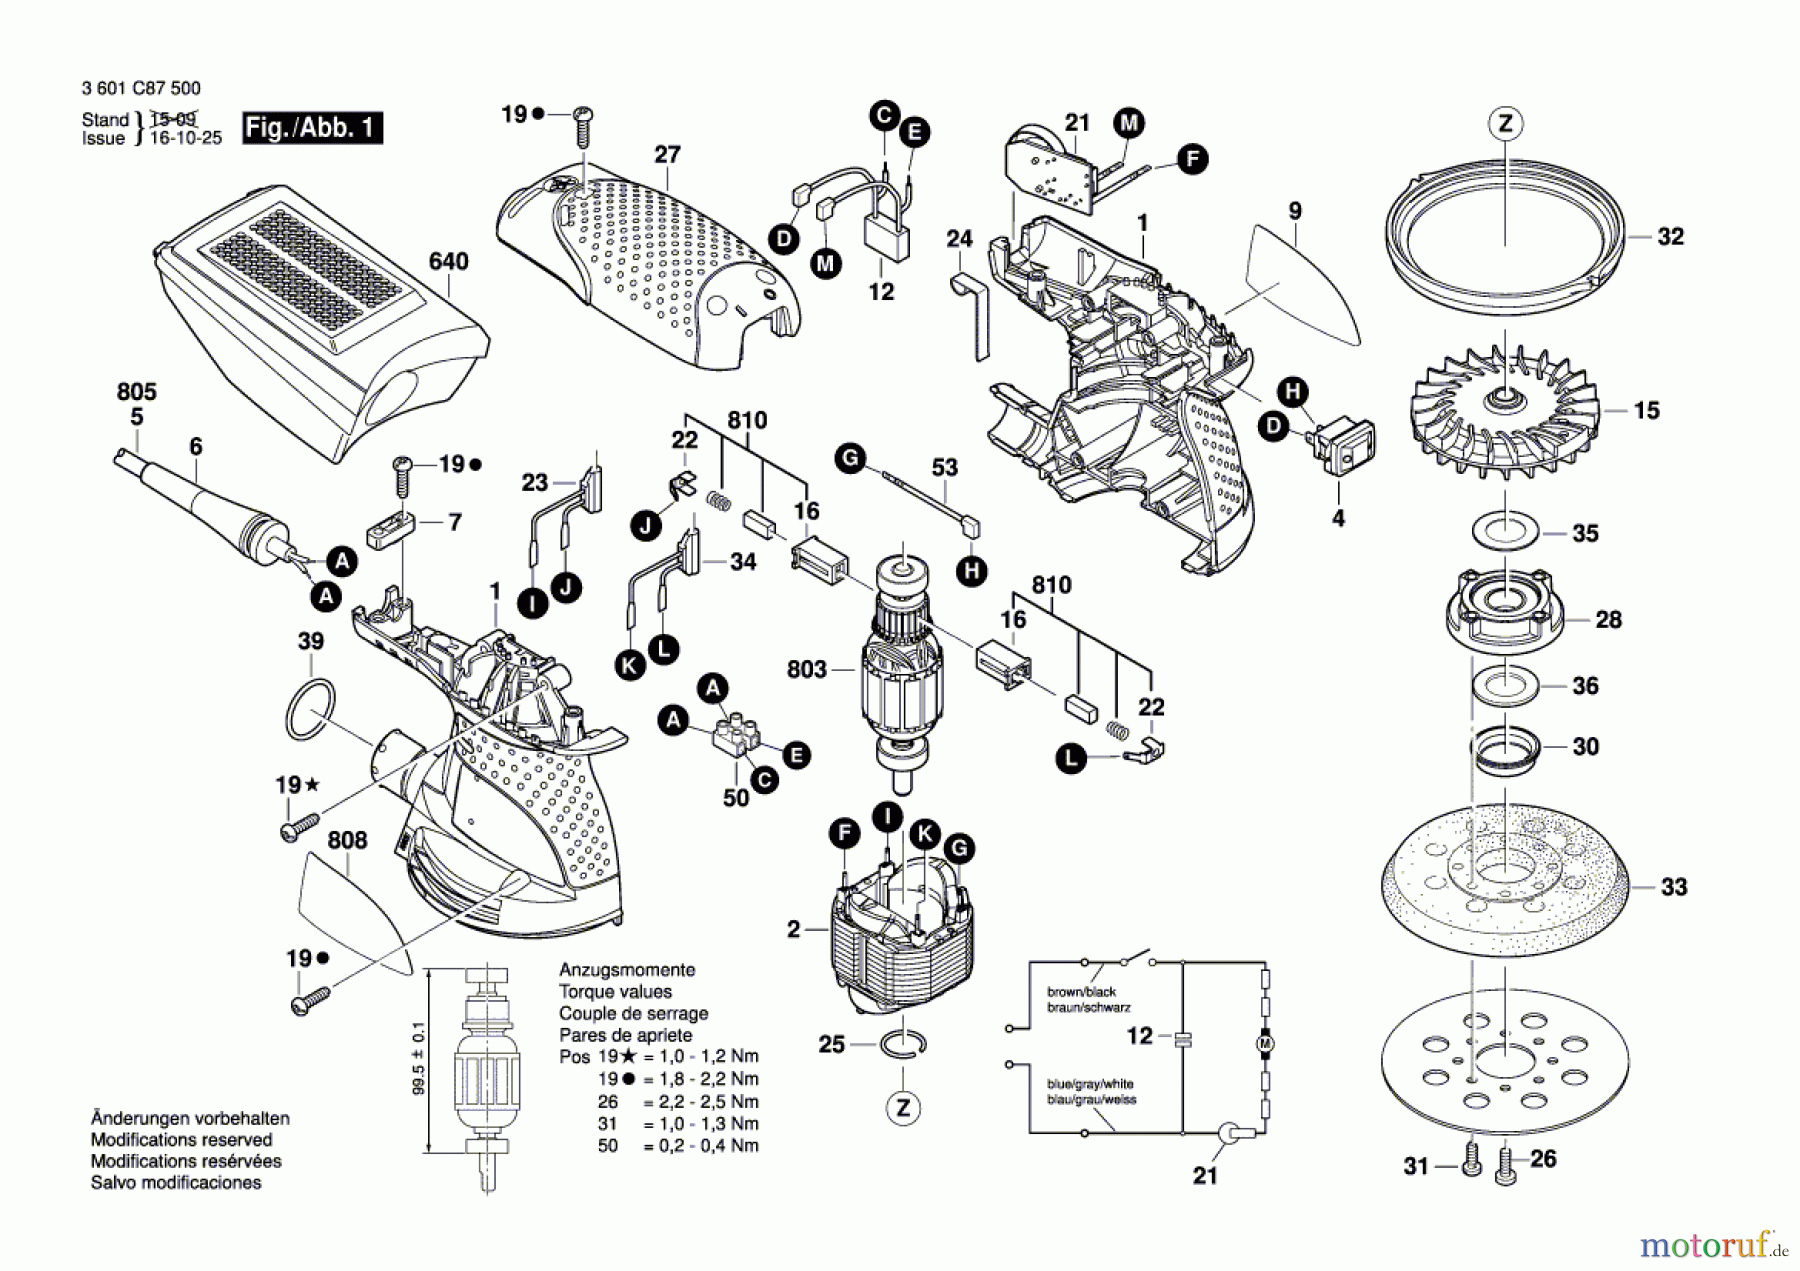  Bosch Werkzeug Exzenterschleifer GEX 125-1 AE Seite 1